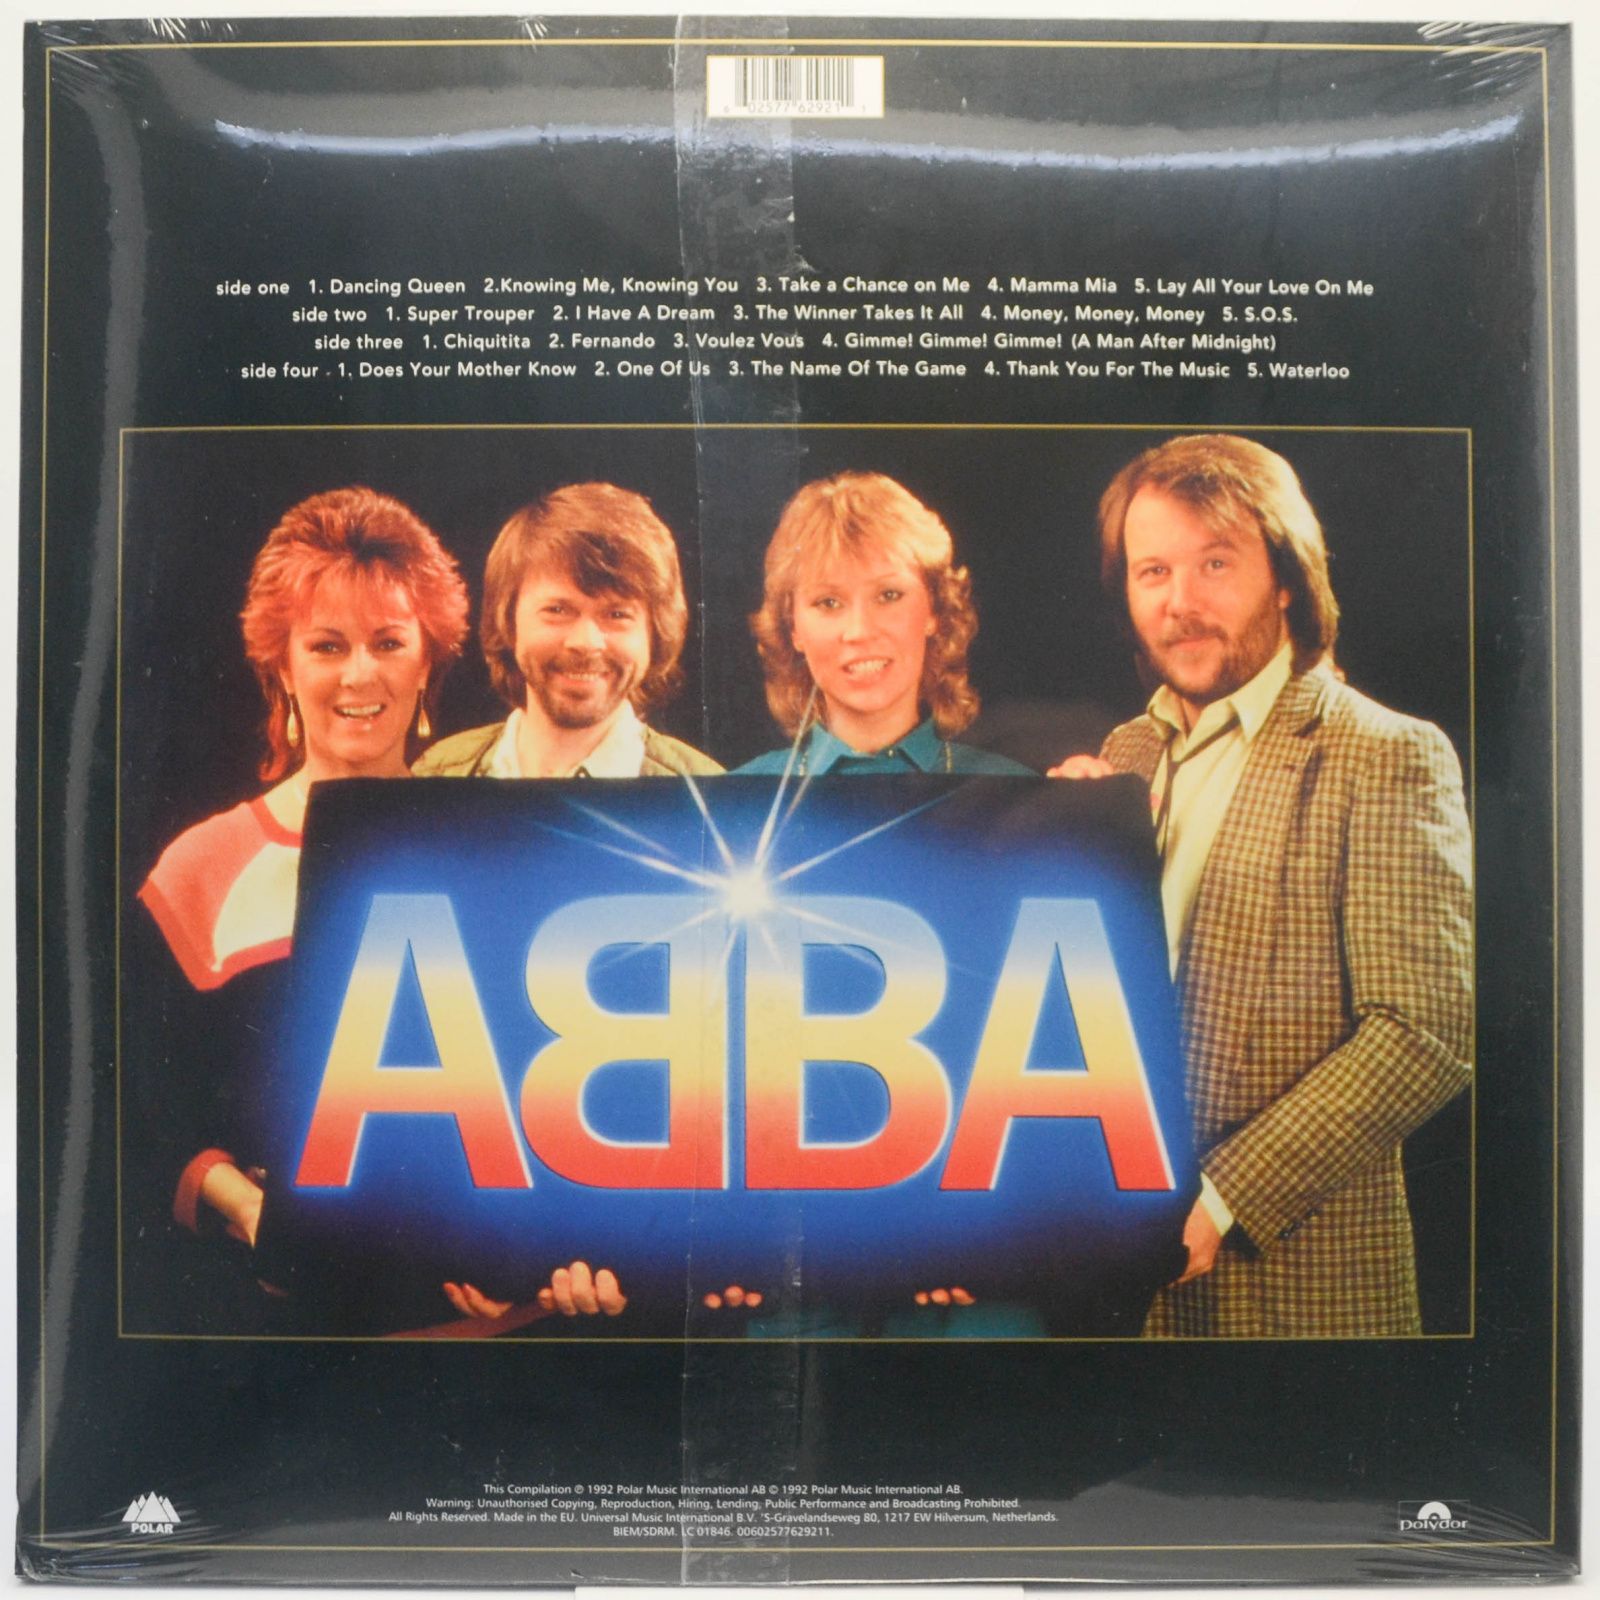 ABBA — Gold (2LP), 1992